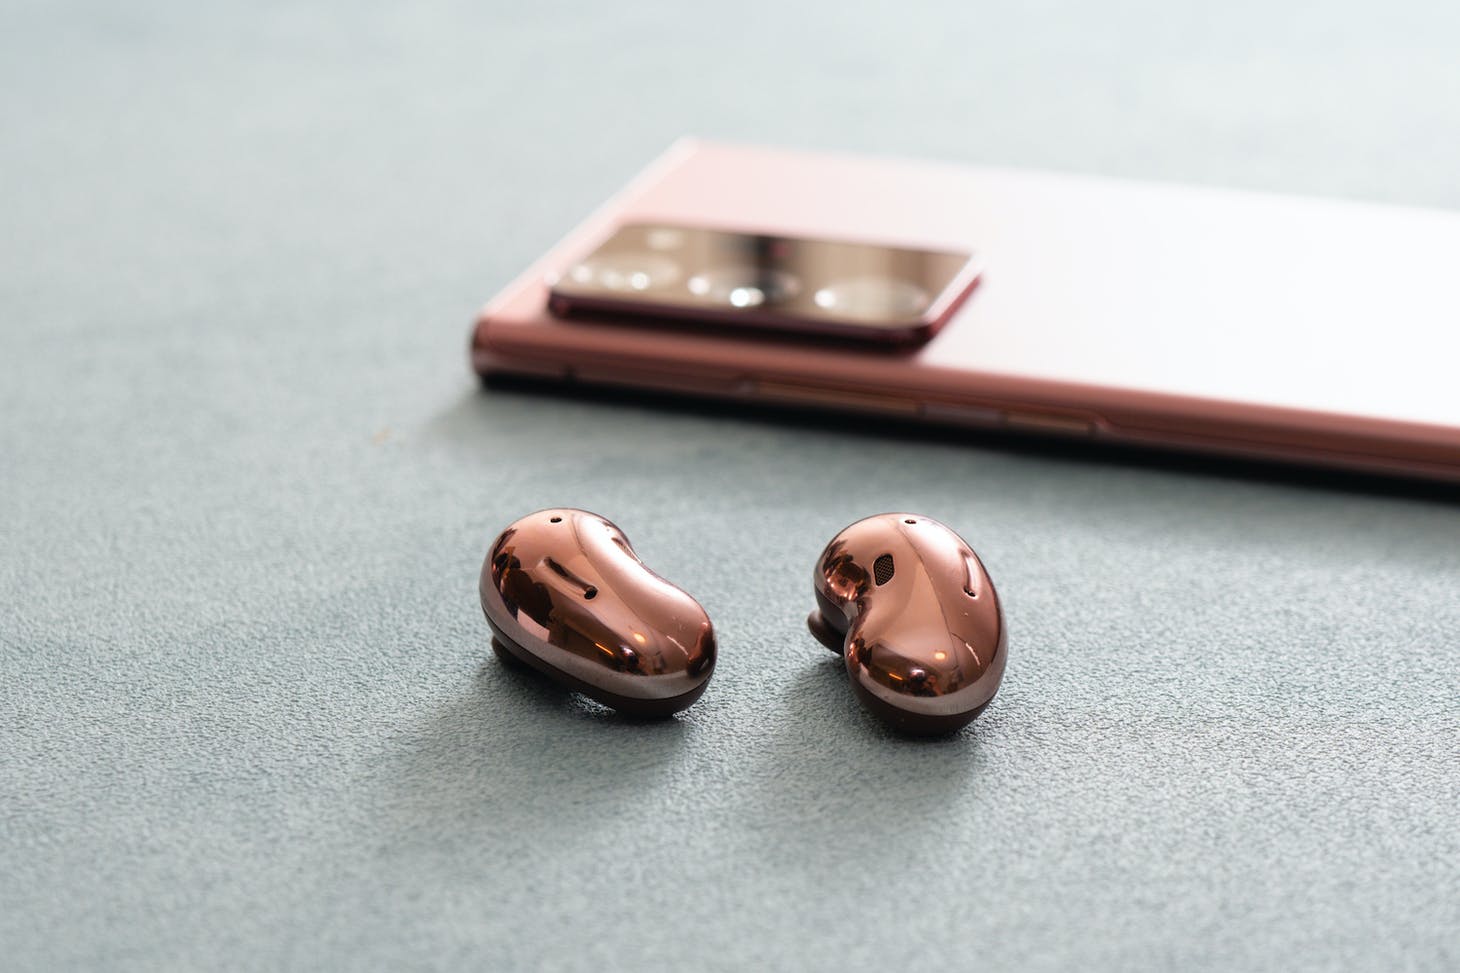 三星Galaxy Buds Live 真无线降噪耳机开箱评测：创新造型服贴耳际配戴更舒适，丰富功能超强降噪音质更胜以往